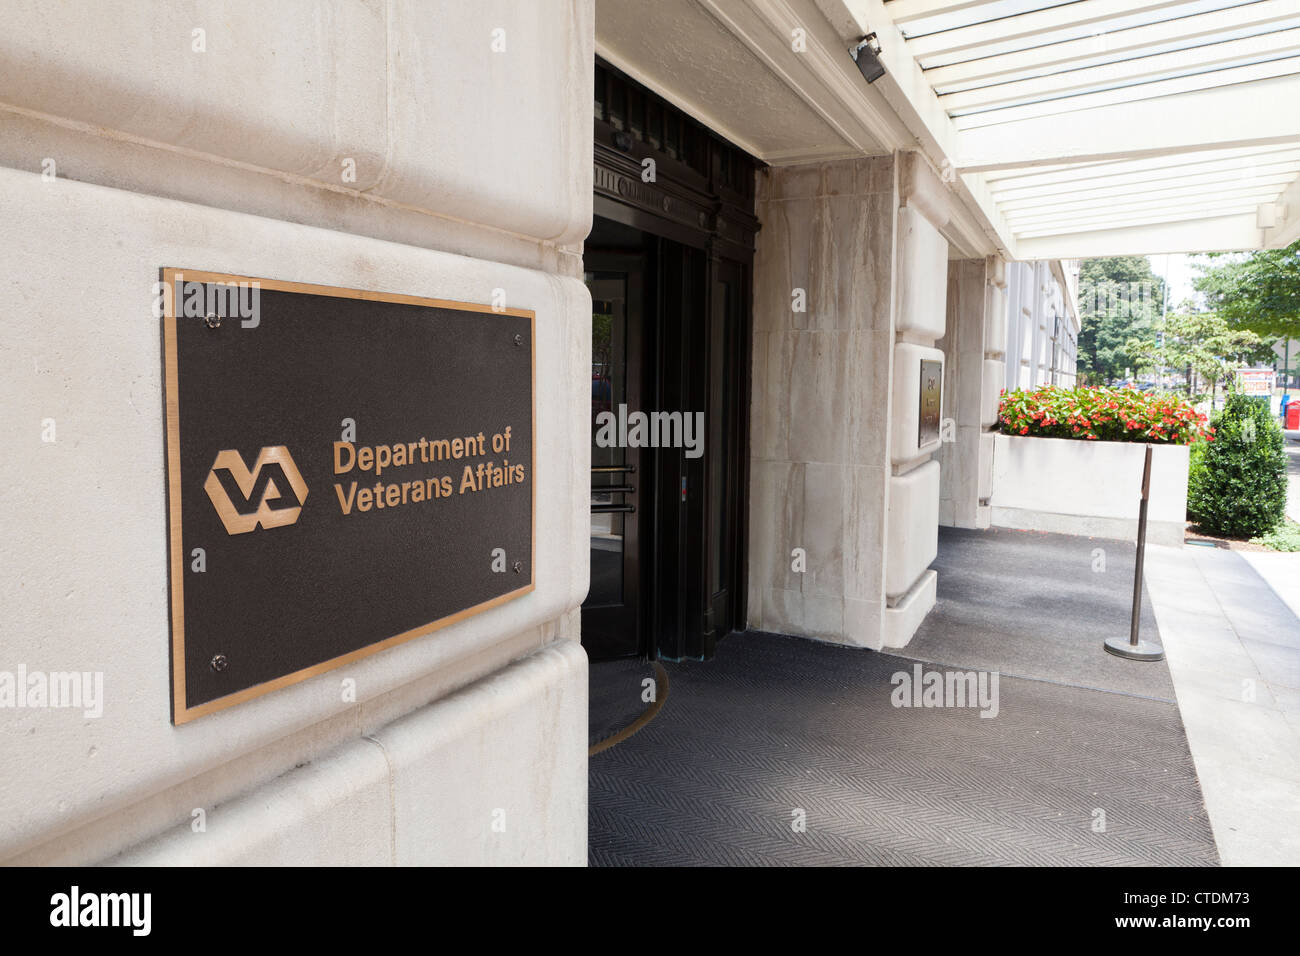 Noi reparto degli affari di veterani headquarters - Washington DC, Stati Uniti d'America Foto Stock